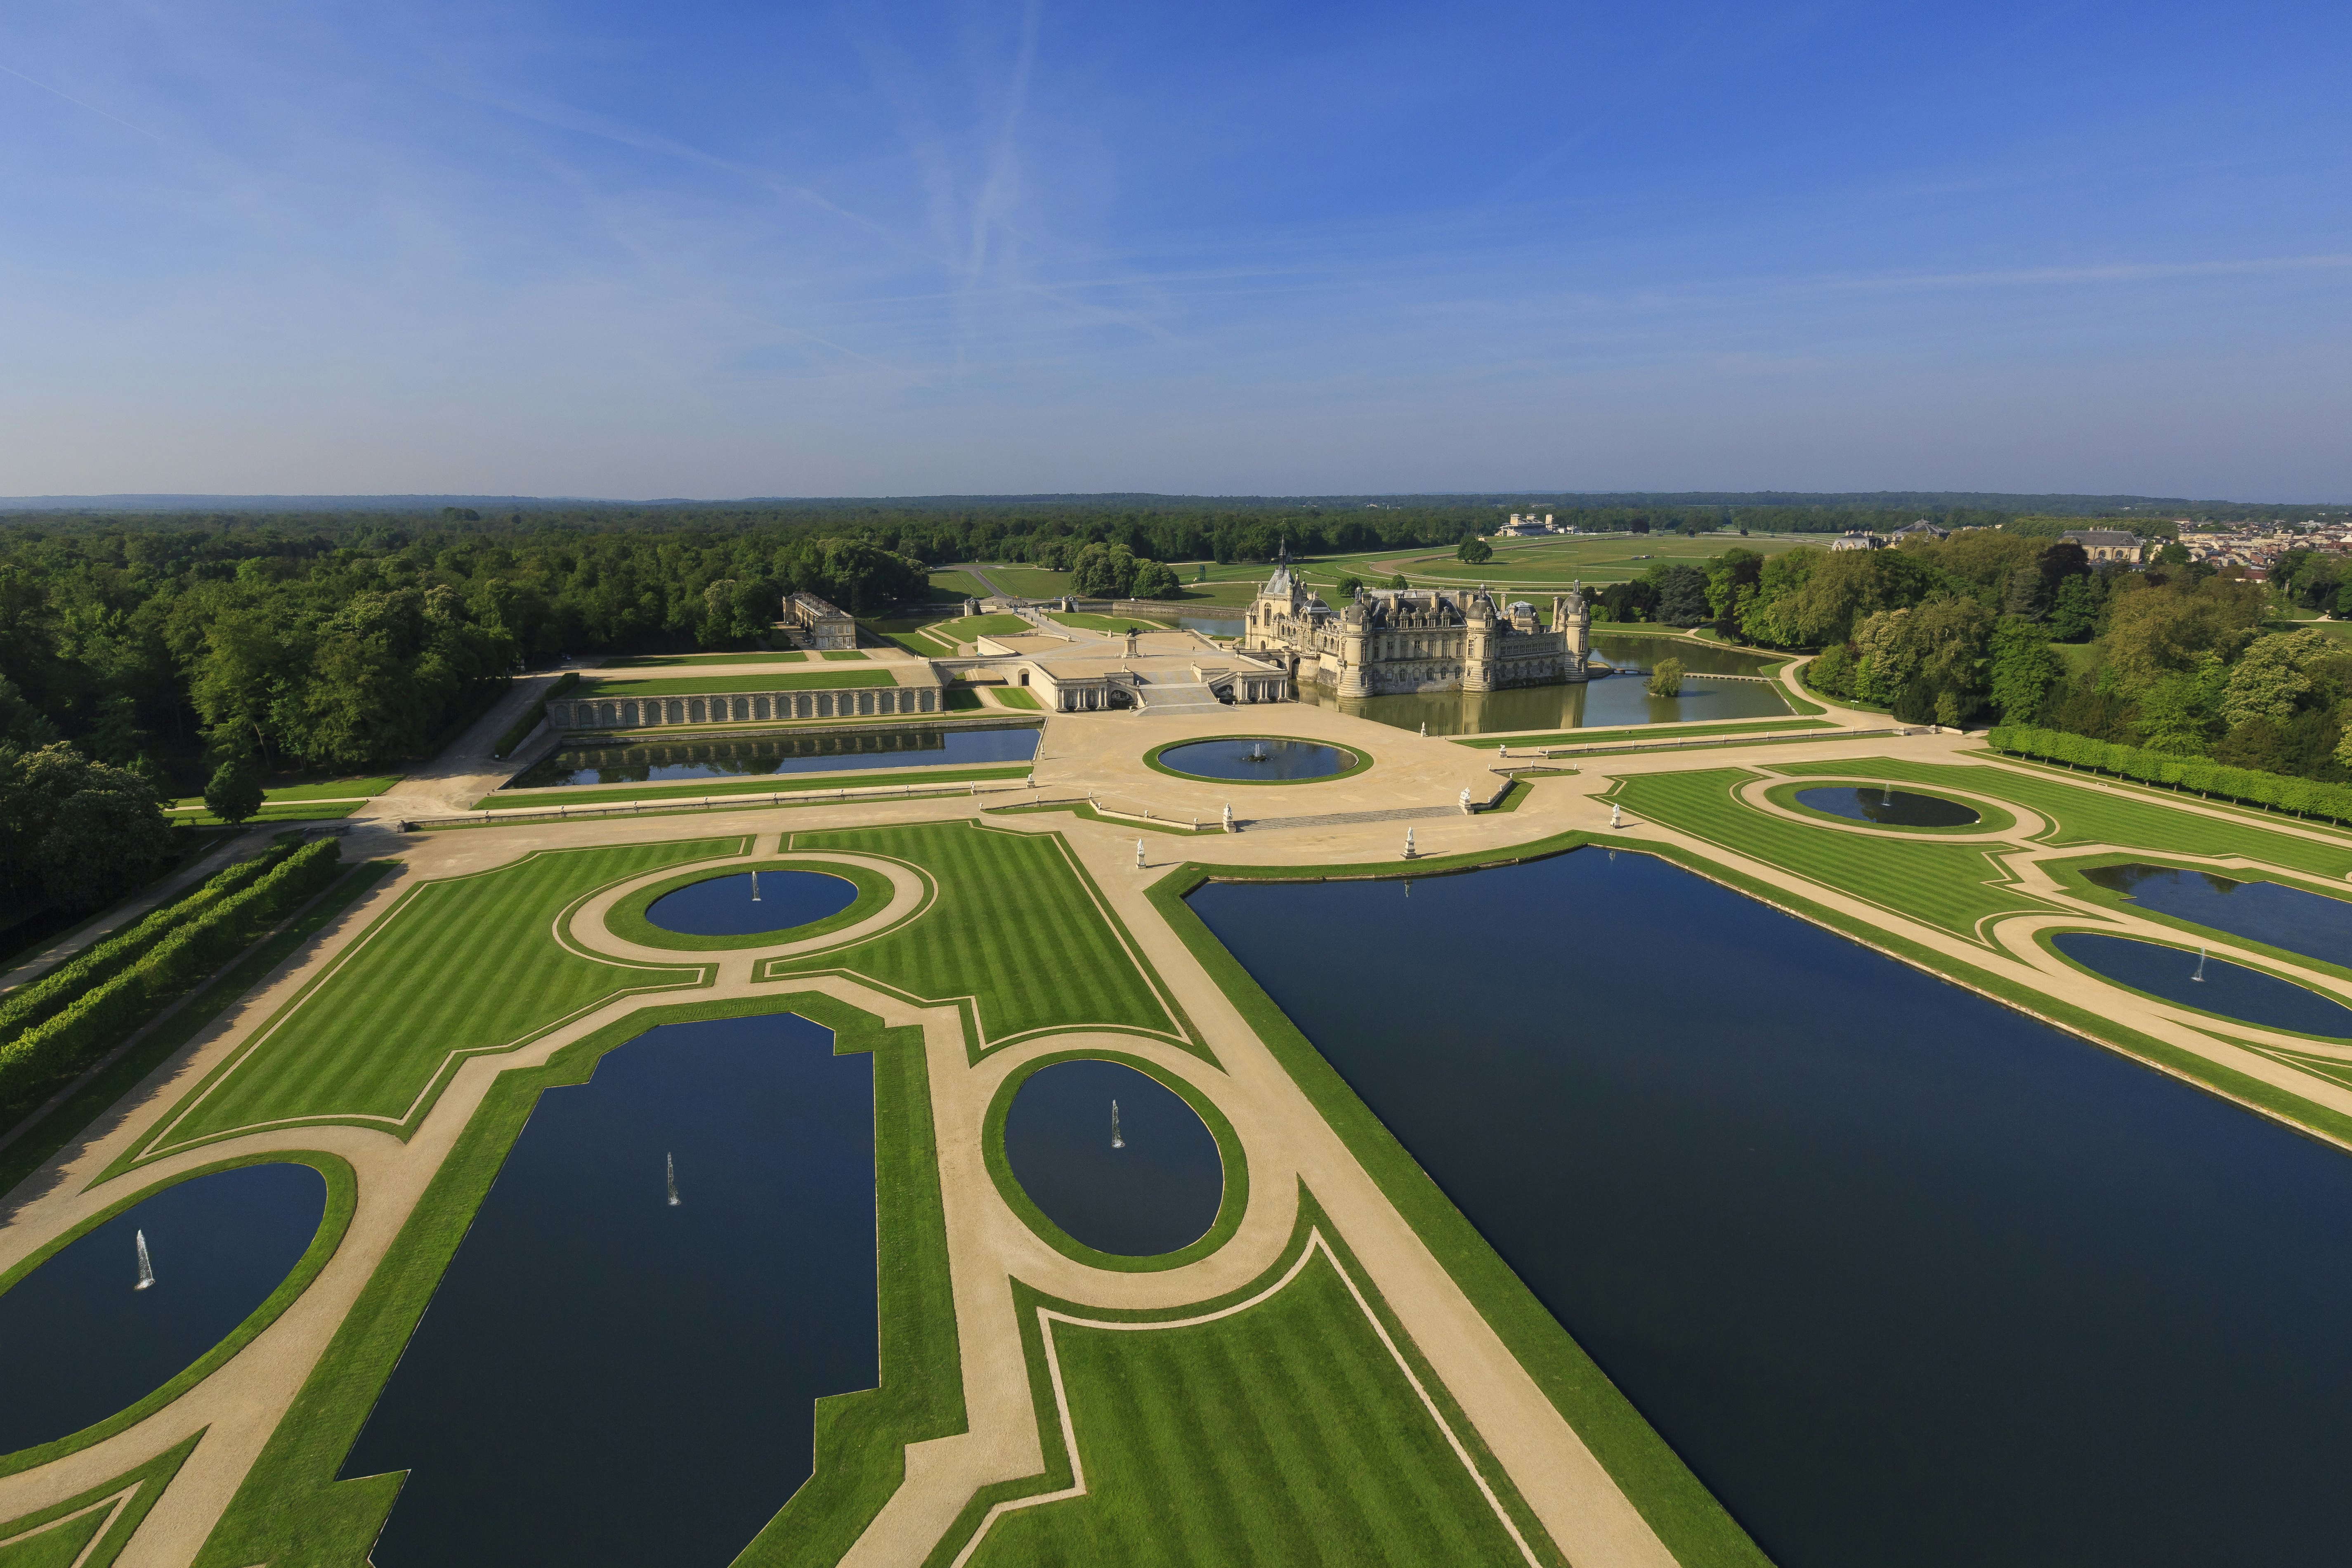 Skip the Line: Chateau de Fontainebleau Ticket 2023